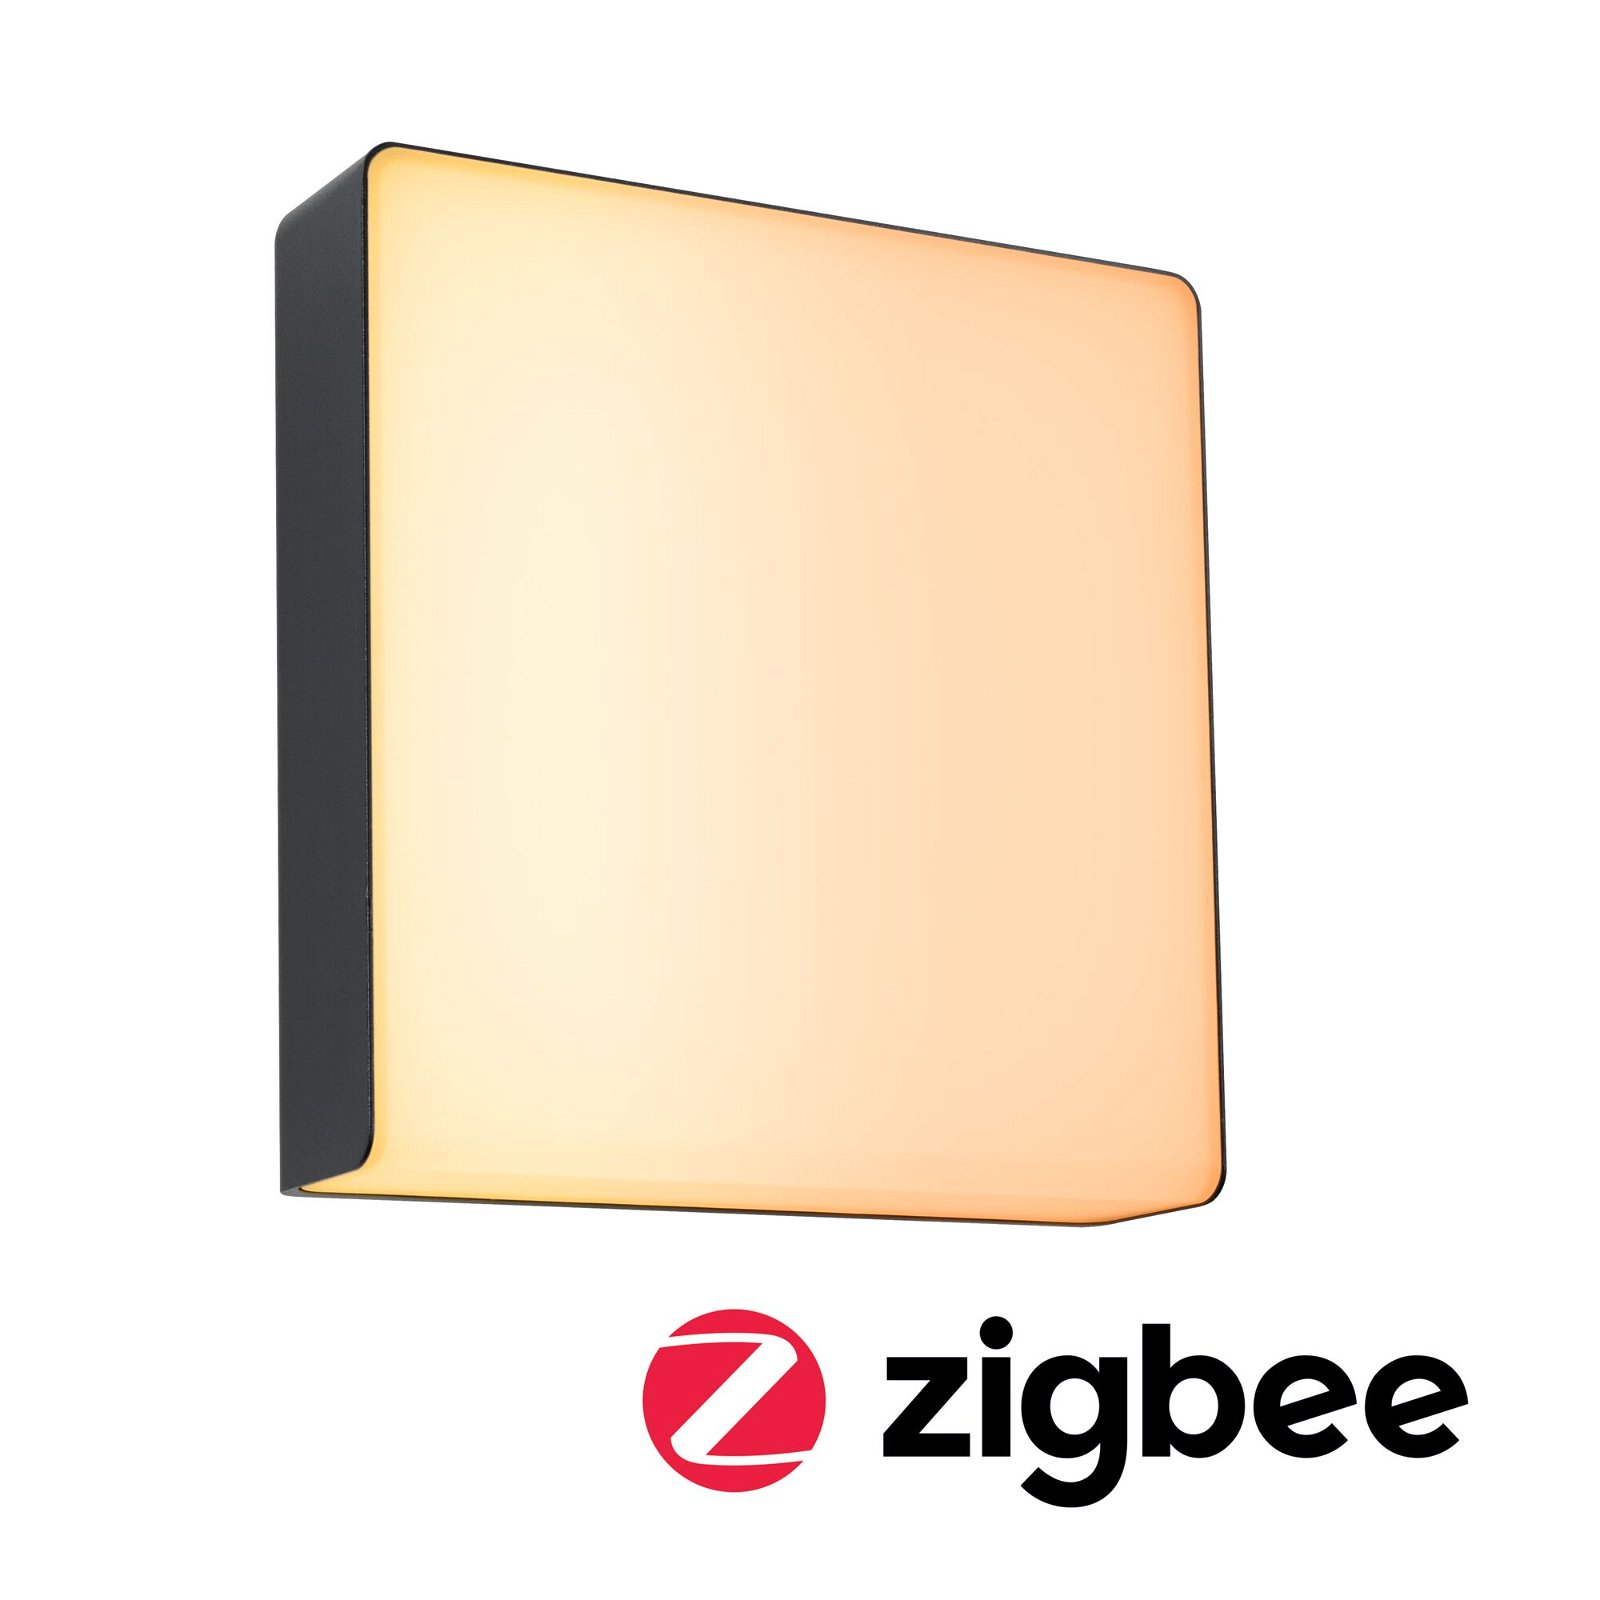 LED Außenwandleuchte Smart Home Zigbee 3.0 Azalena Bewegungsmelder mit Hochfrequenz-Sensor insektenfreundlich IP44 250x97mm Tunable Warm 8,5W 700lm 230V Anthrazit Kunststoff/Aluminium